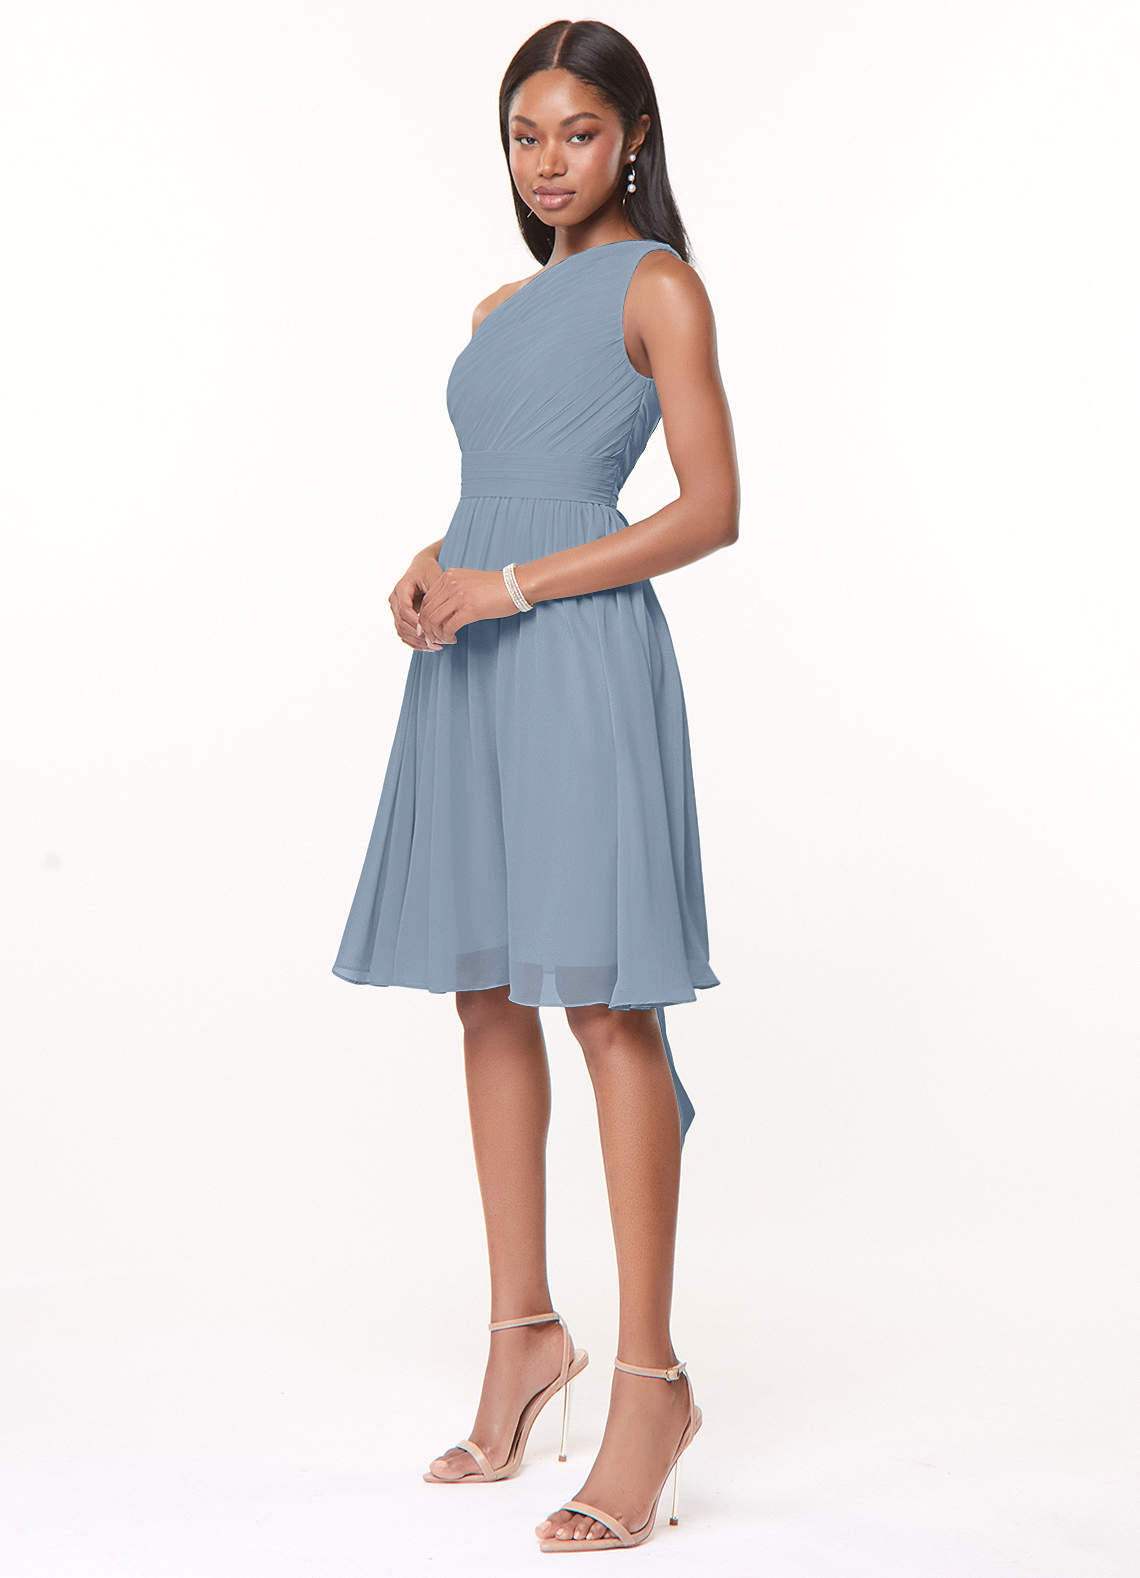 Azazie Katrina Bridesmaid Dresses A-Line One Shoulder Chiffon Knee-Length Dress image1